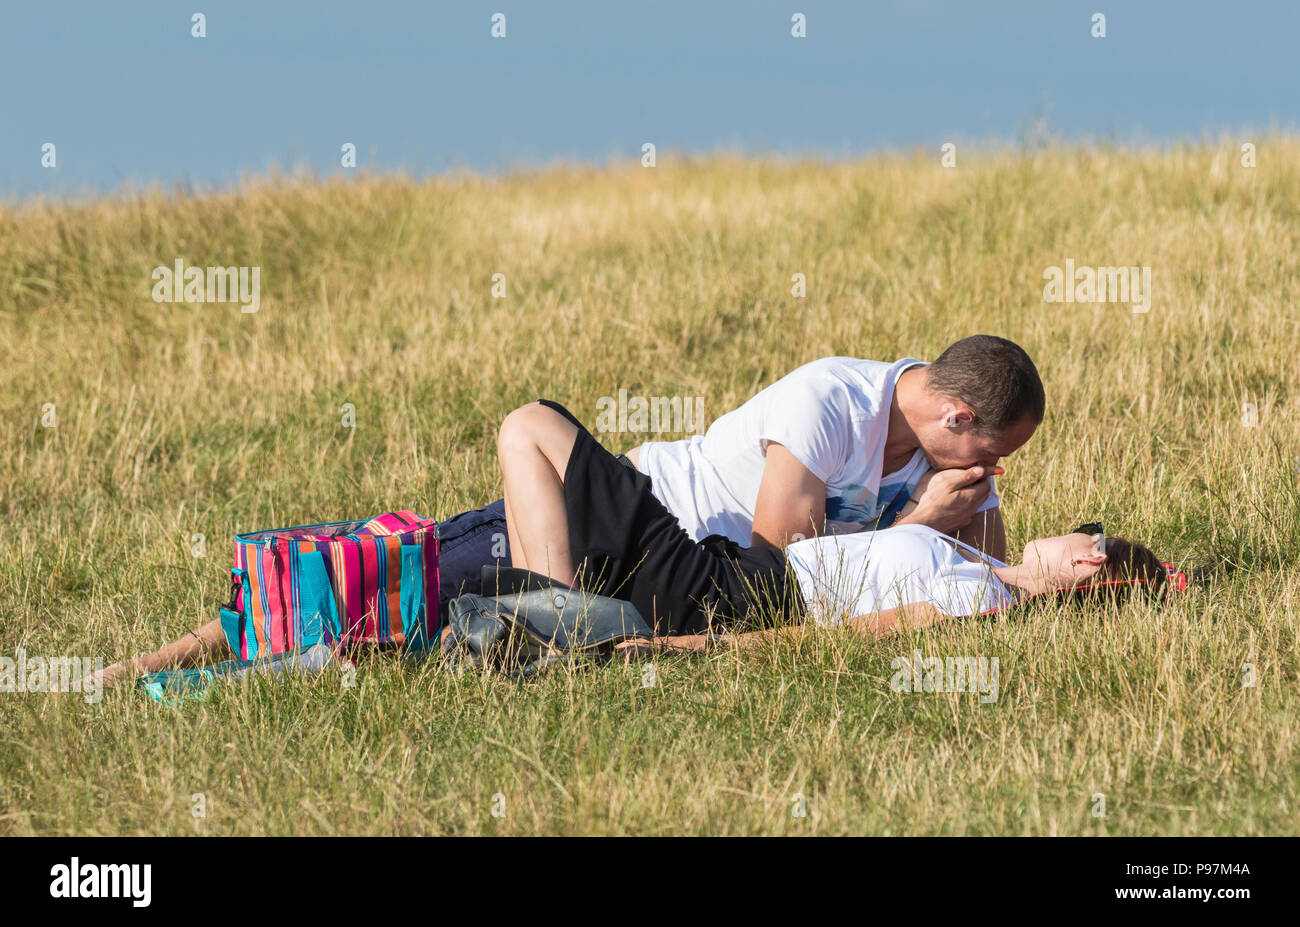 Giovane uomo e donna posa insieme in un campo in una calda serata estiva la condivisione di un momento di intima. Coppia giovane NEL REGNO UNITO. Nota:non possono essere una coppia. Foto Stock